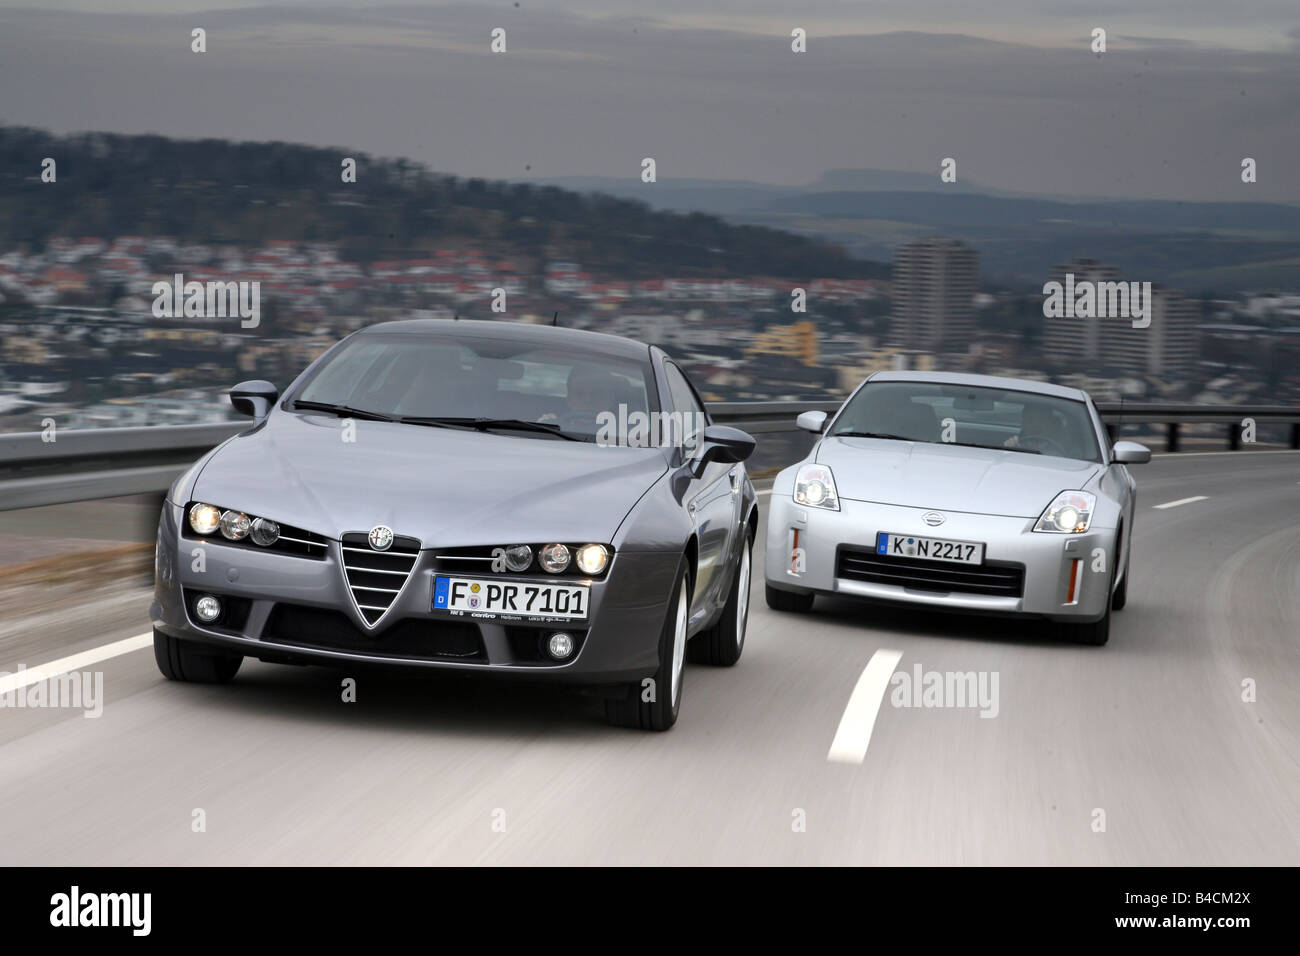 Alfa Romeo Brera 3.2 JTS V6 und Nissan 350 Z, Modelljahr 2006-Anthrazit/Silber, fahren, schräg von vorne, Frontal vie Stockfoto